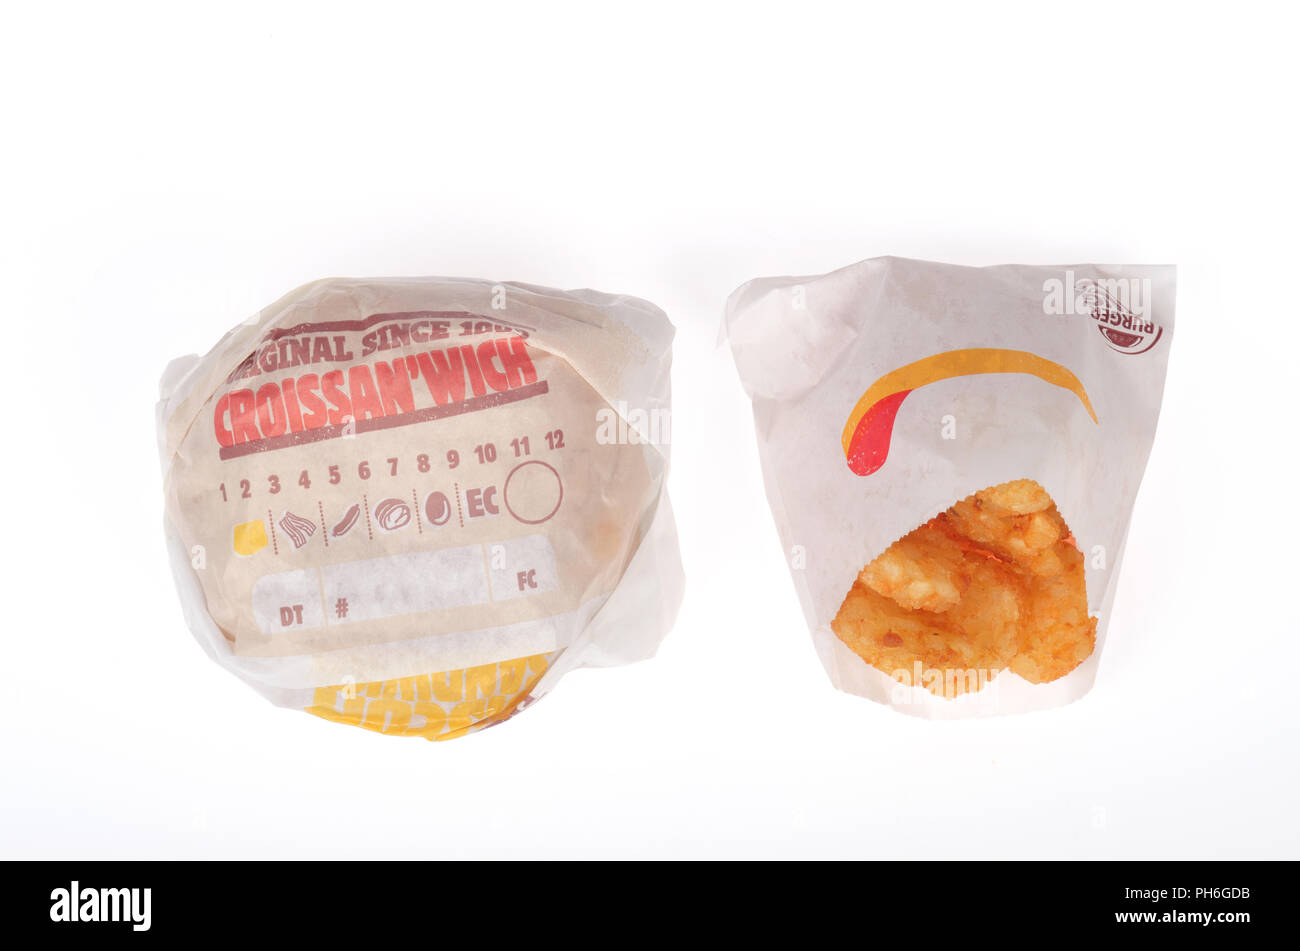 Burger King salsiccia, uova e formaggio Croissan"quale e un hash browns negli involucri su sfondo bianco Foto Stock